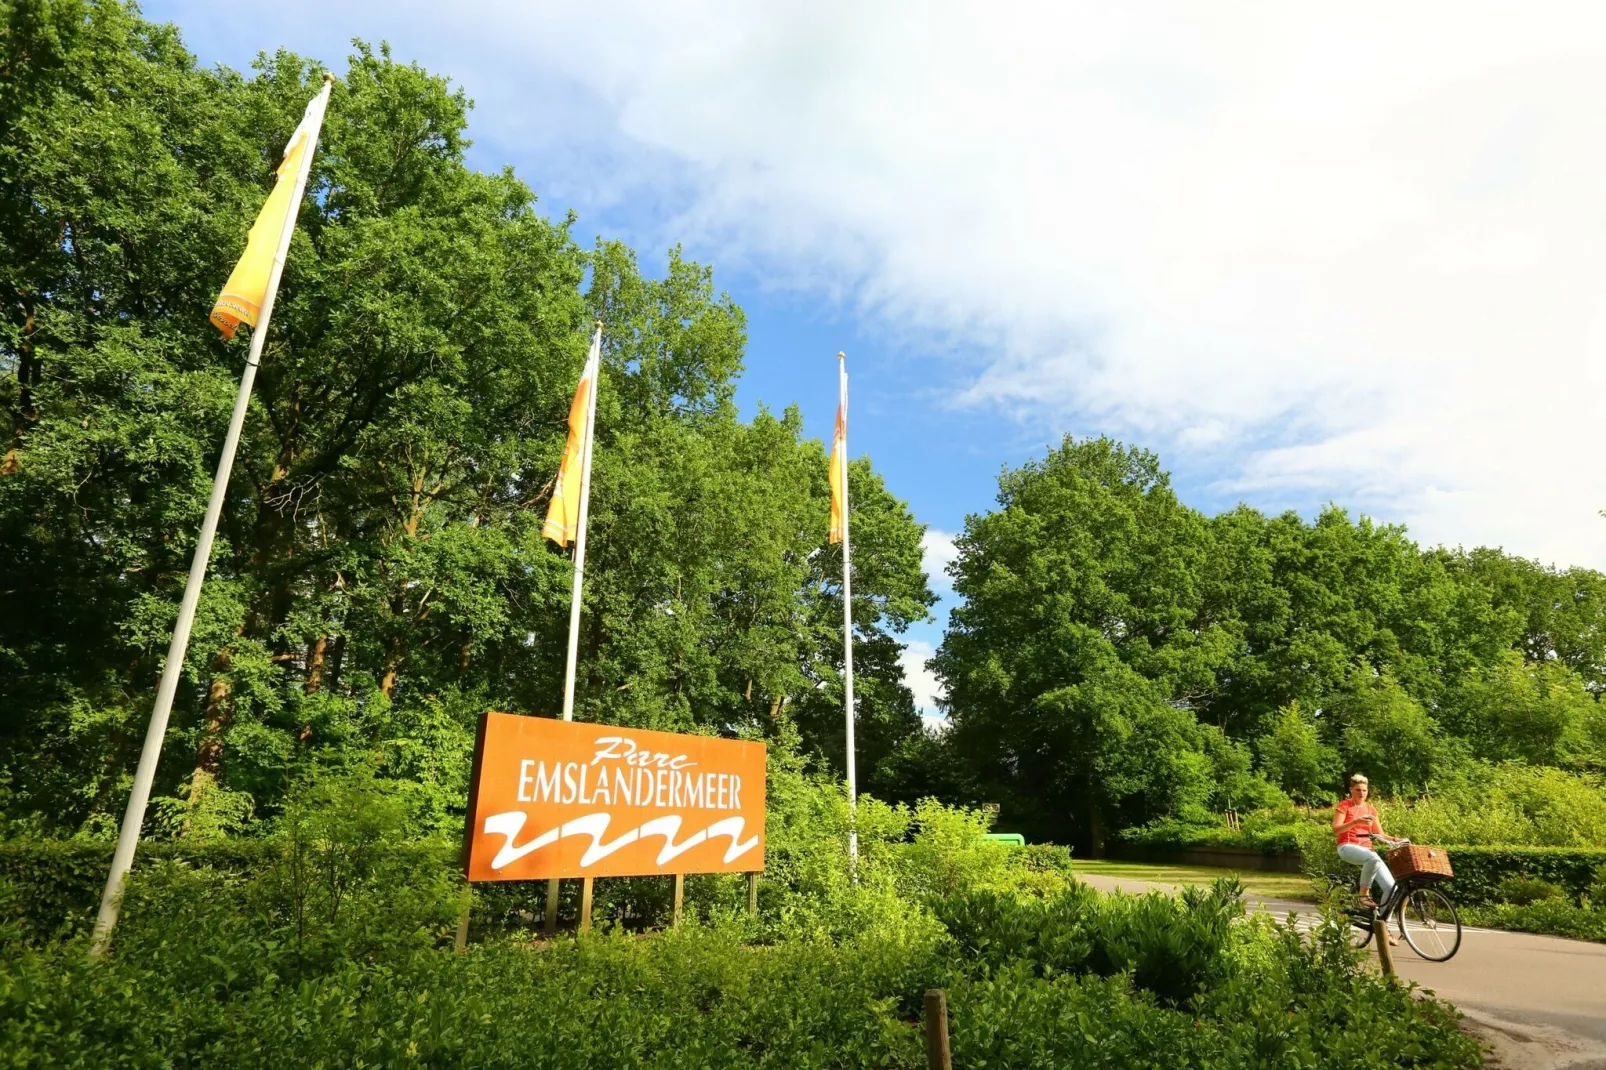 Vakantiepark Emslandermeer 1-Gebieden zomer 1km